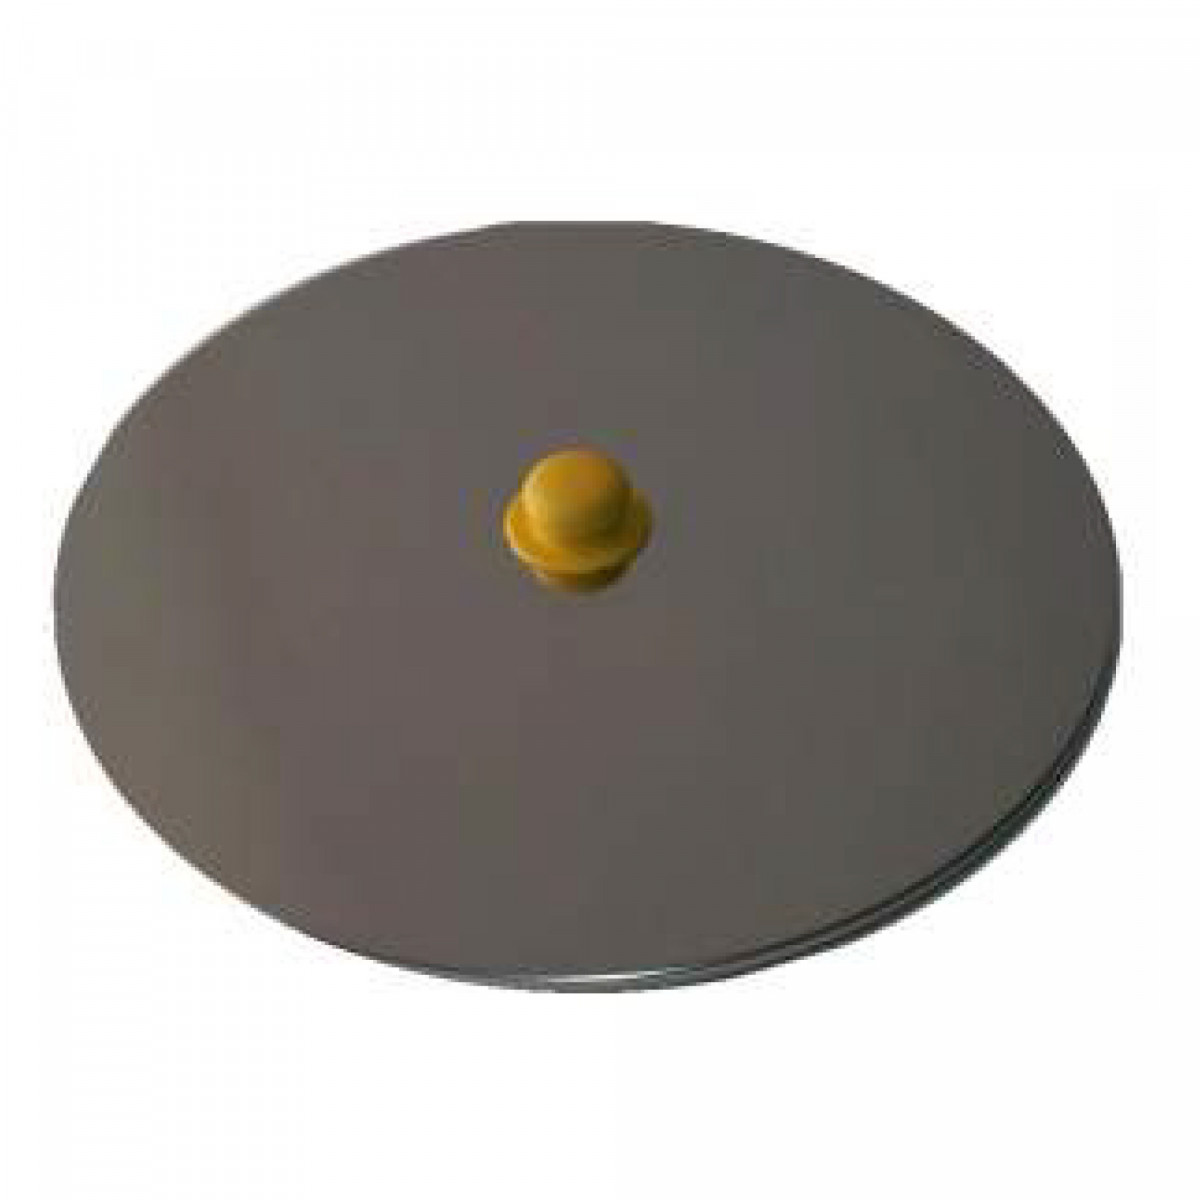 SST dust lid for flat bottom tank 100-150 l